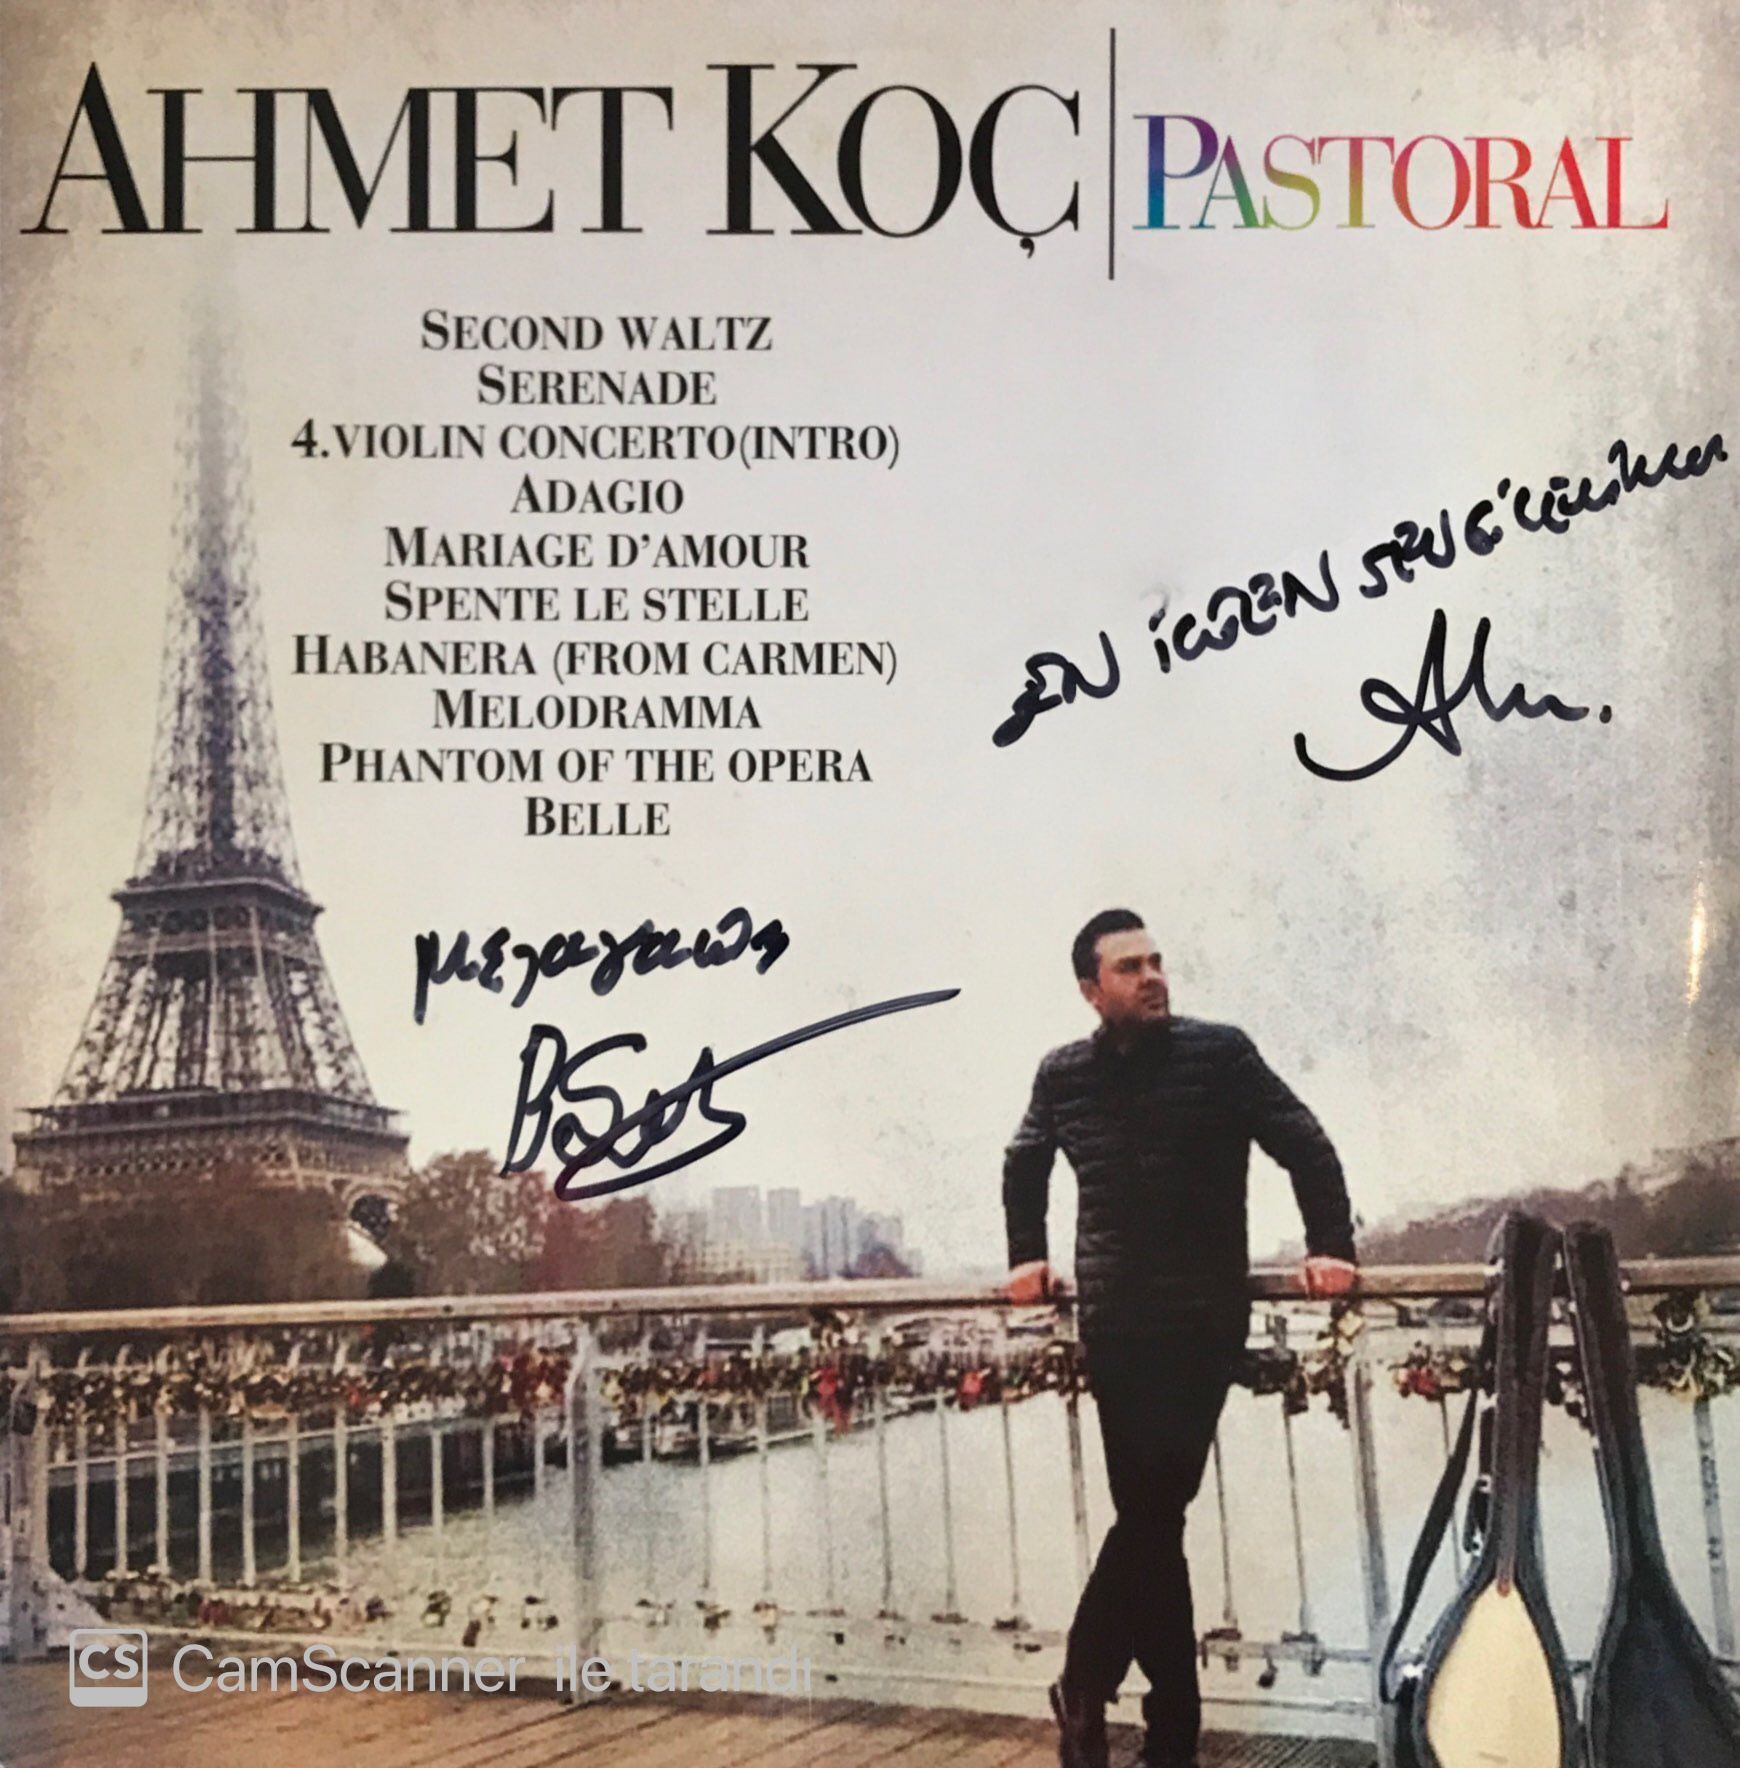 Ahmet Koç - Pastoral LP (İmzalı)